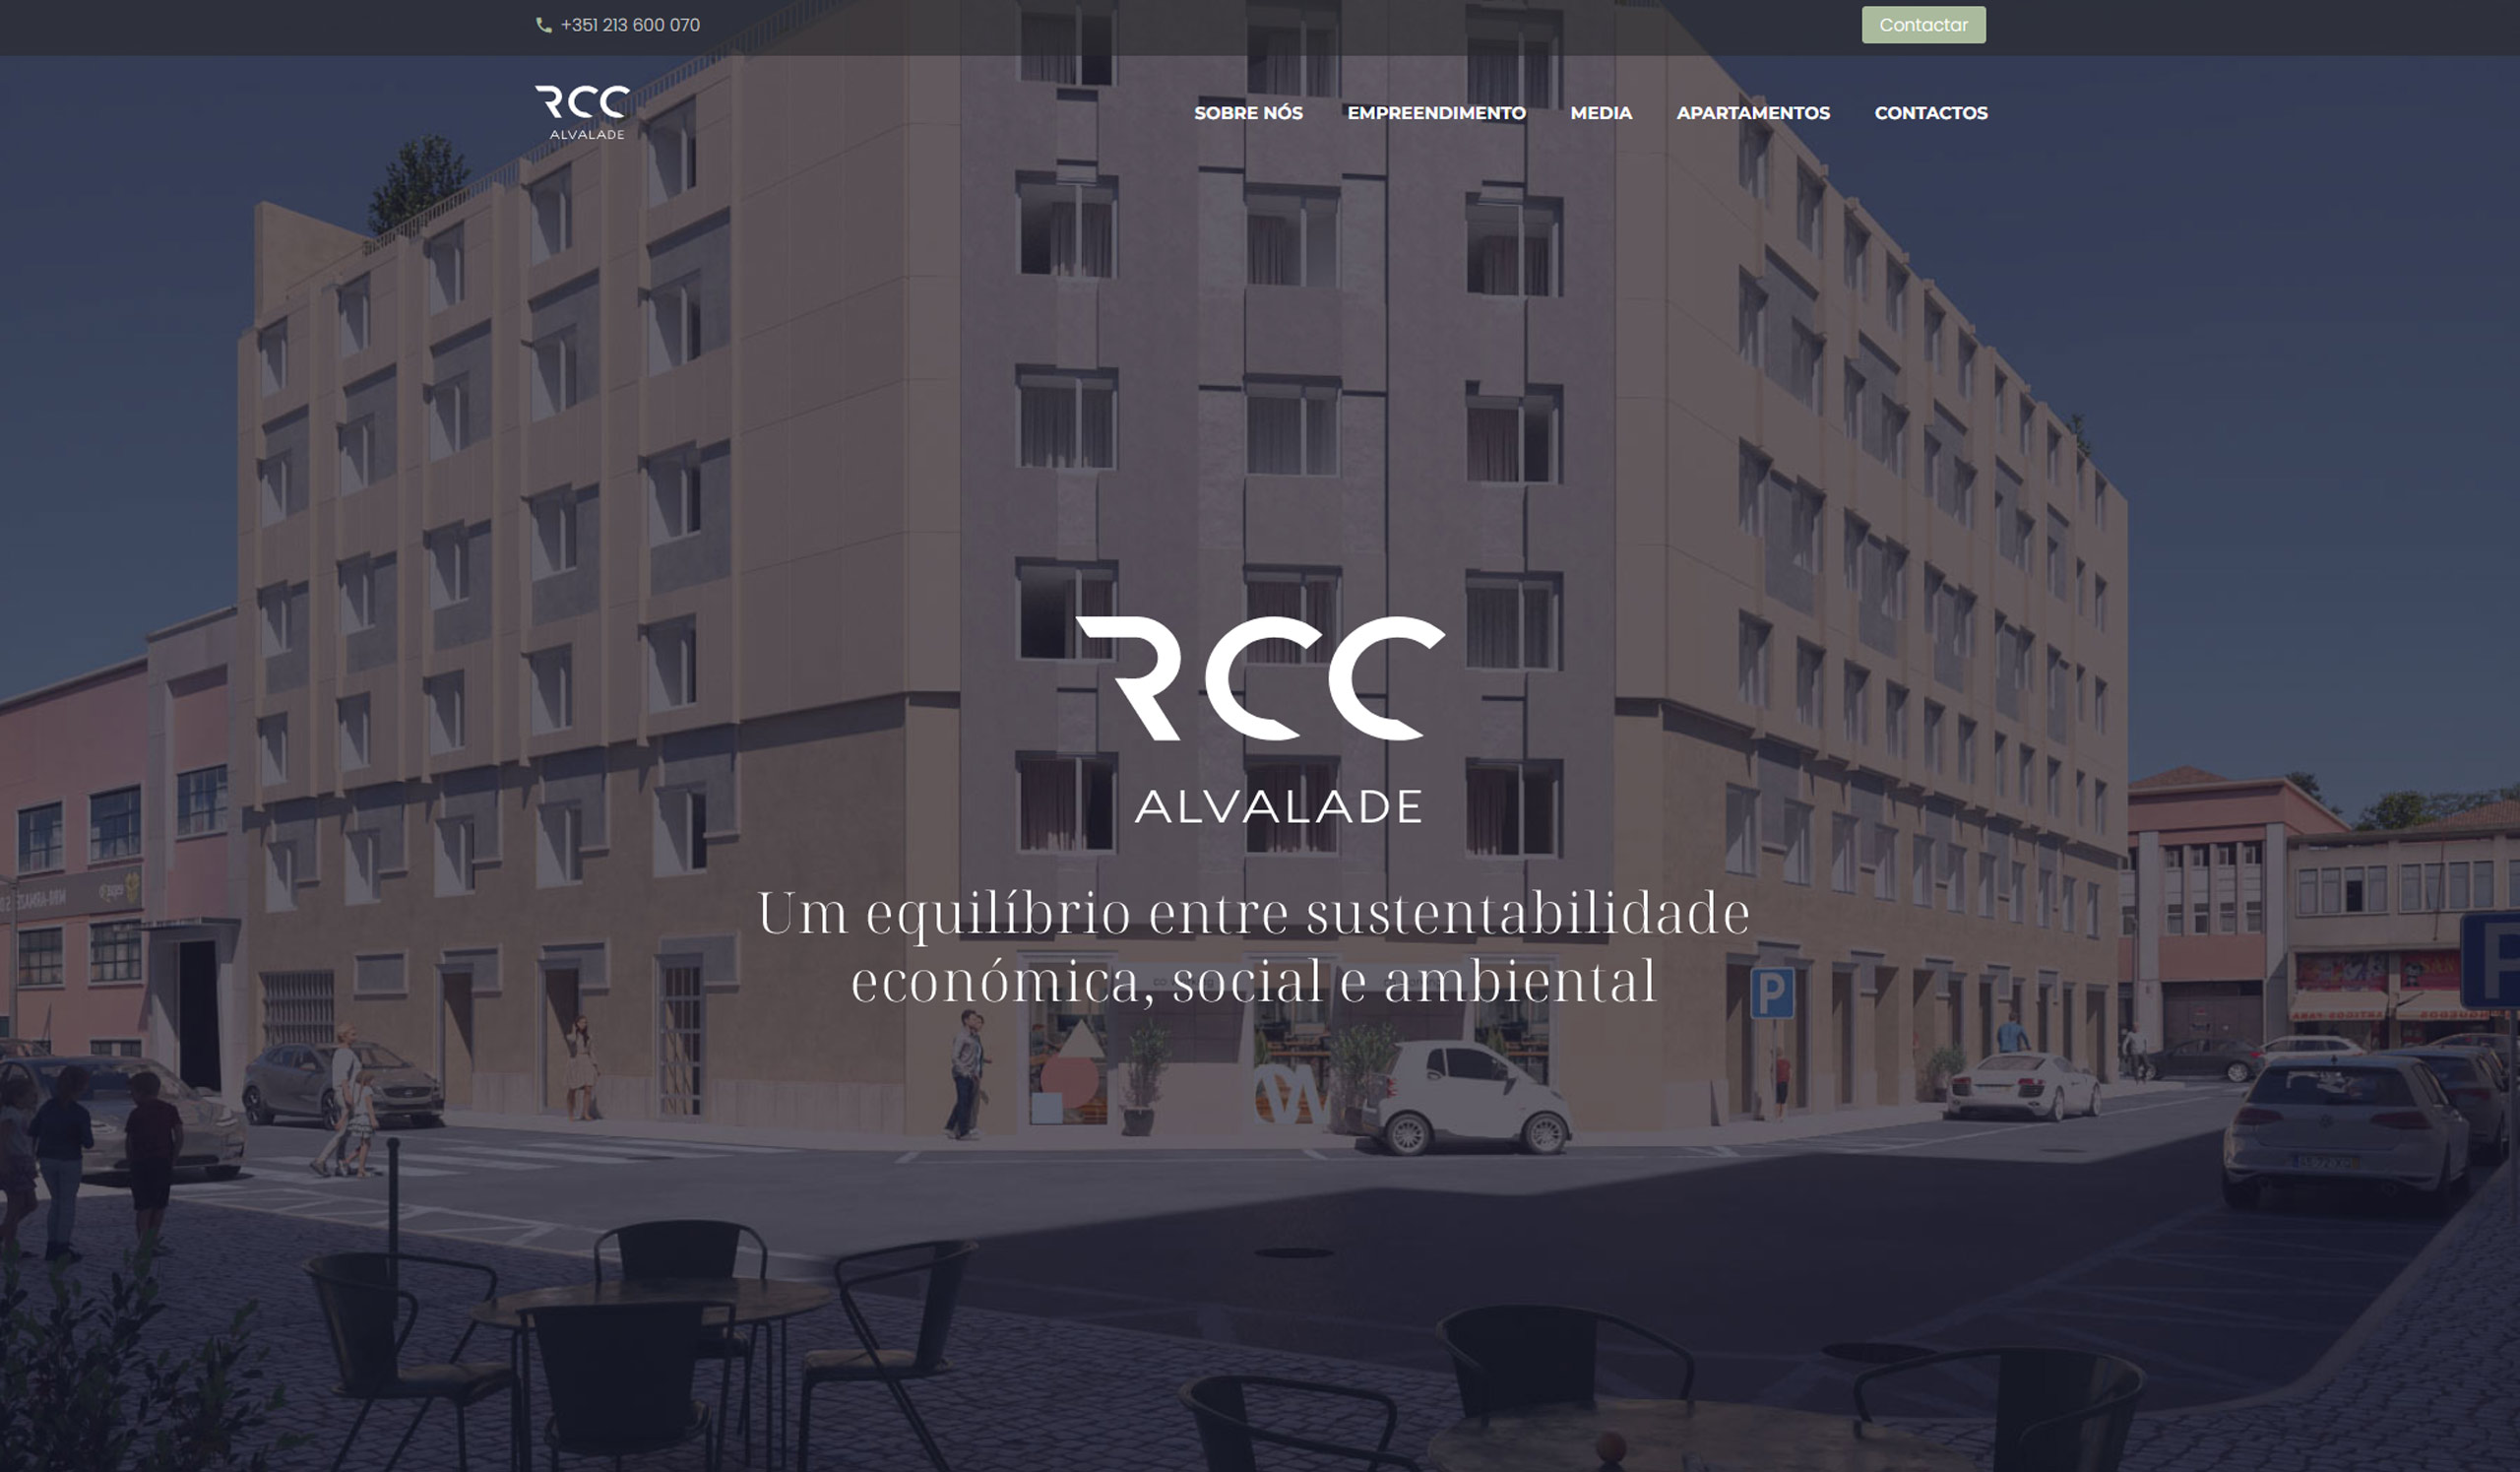 RCC Alvalade